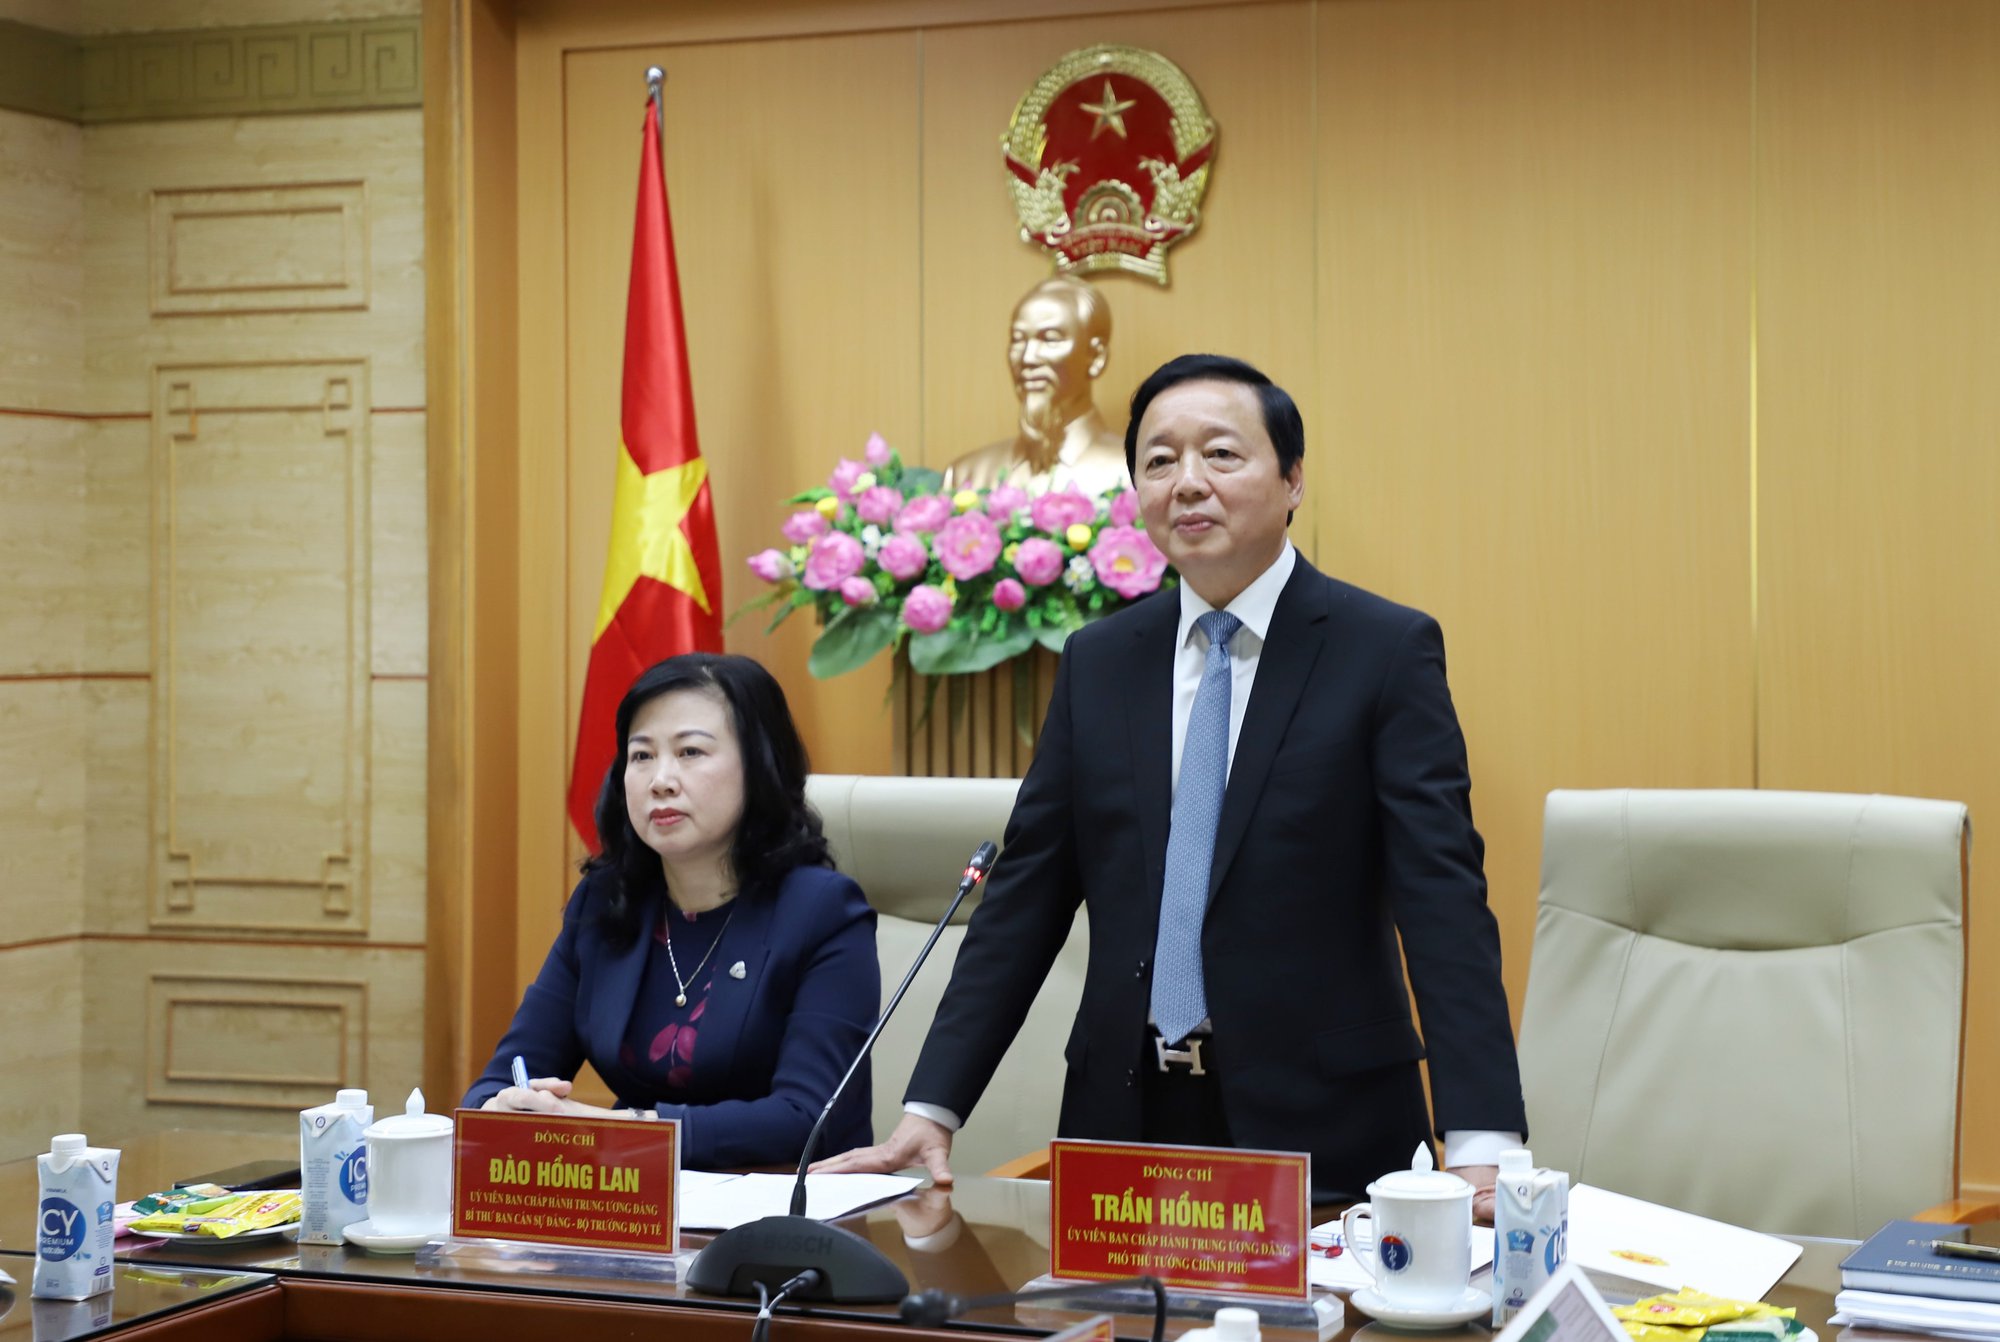 Phó Thủ tướng Trần Hồng Hà và Bộ trưởng Đào Hồng Lan nhận thêm nhiệm vụ - Ảnh 1.